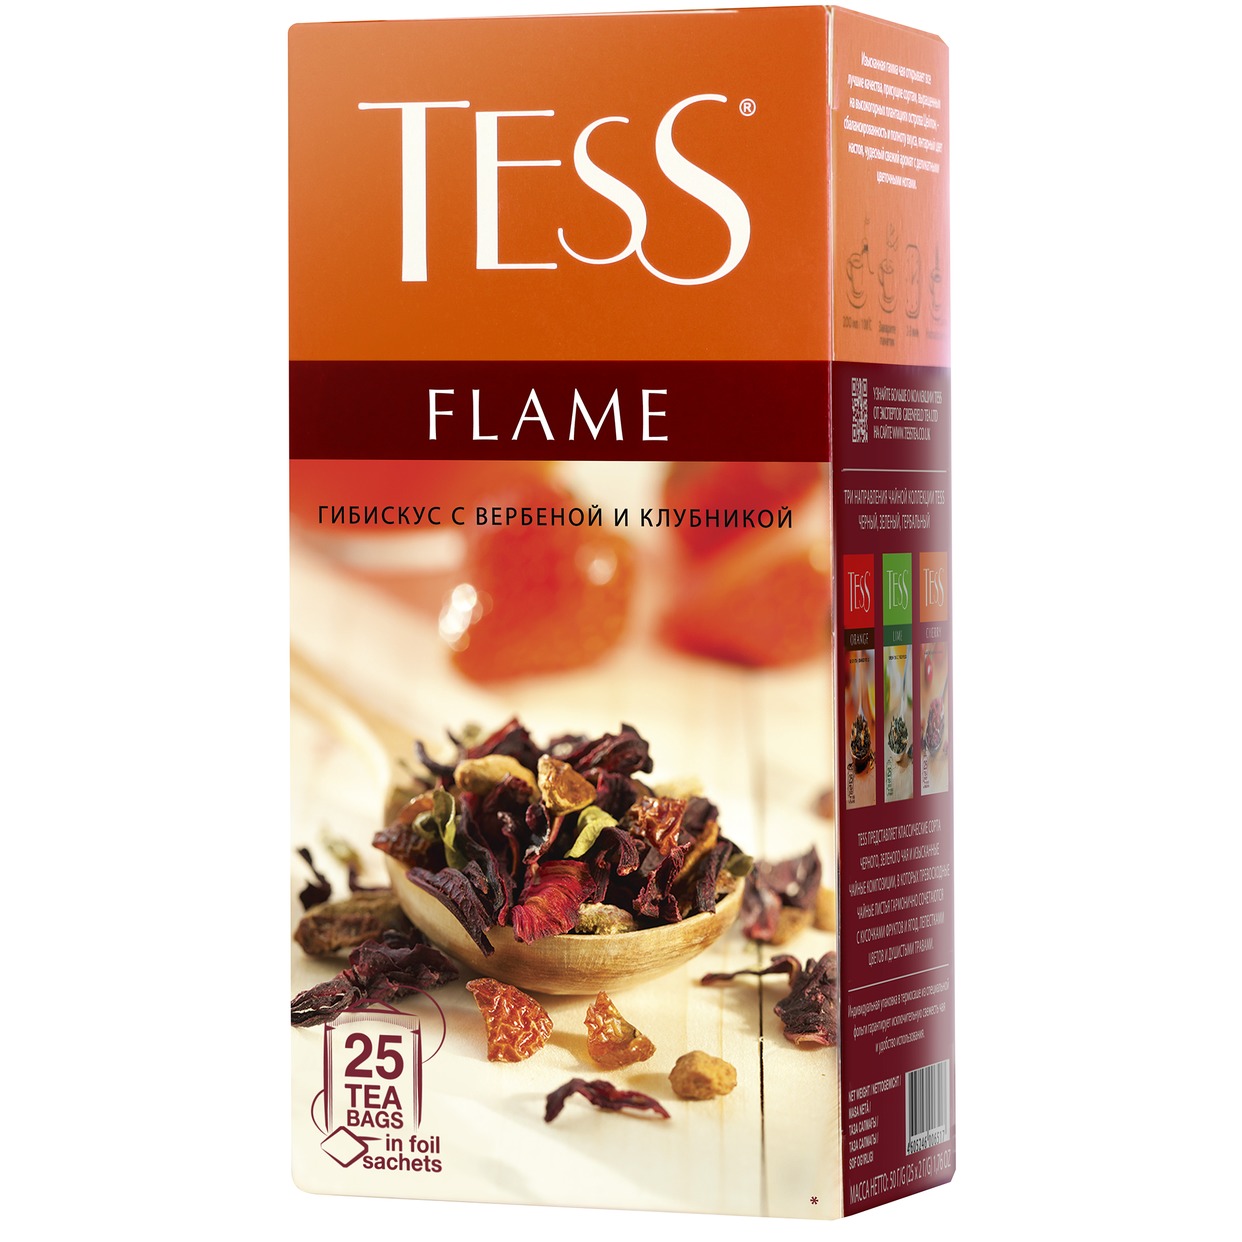 Чай фруктовый Tess Flame с земляникой и розовым перцем 25 пак по акции в Пятерочке